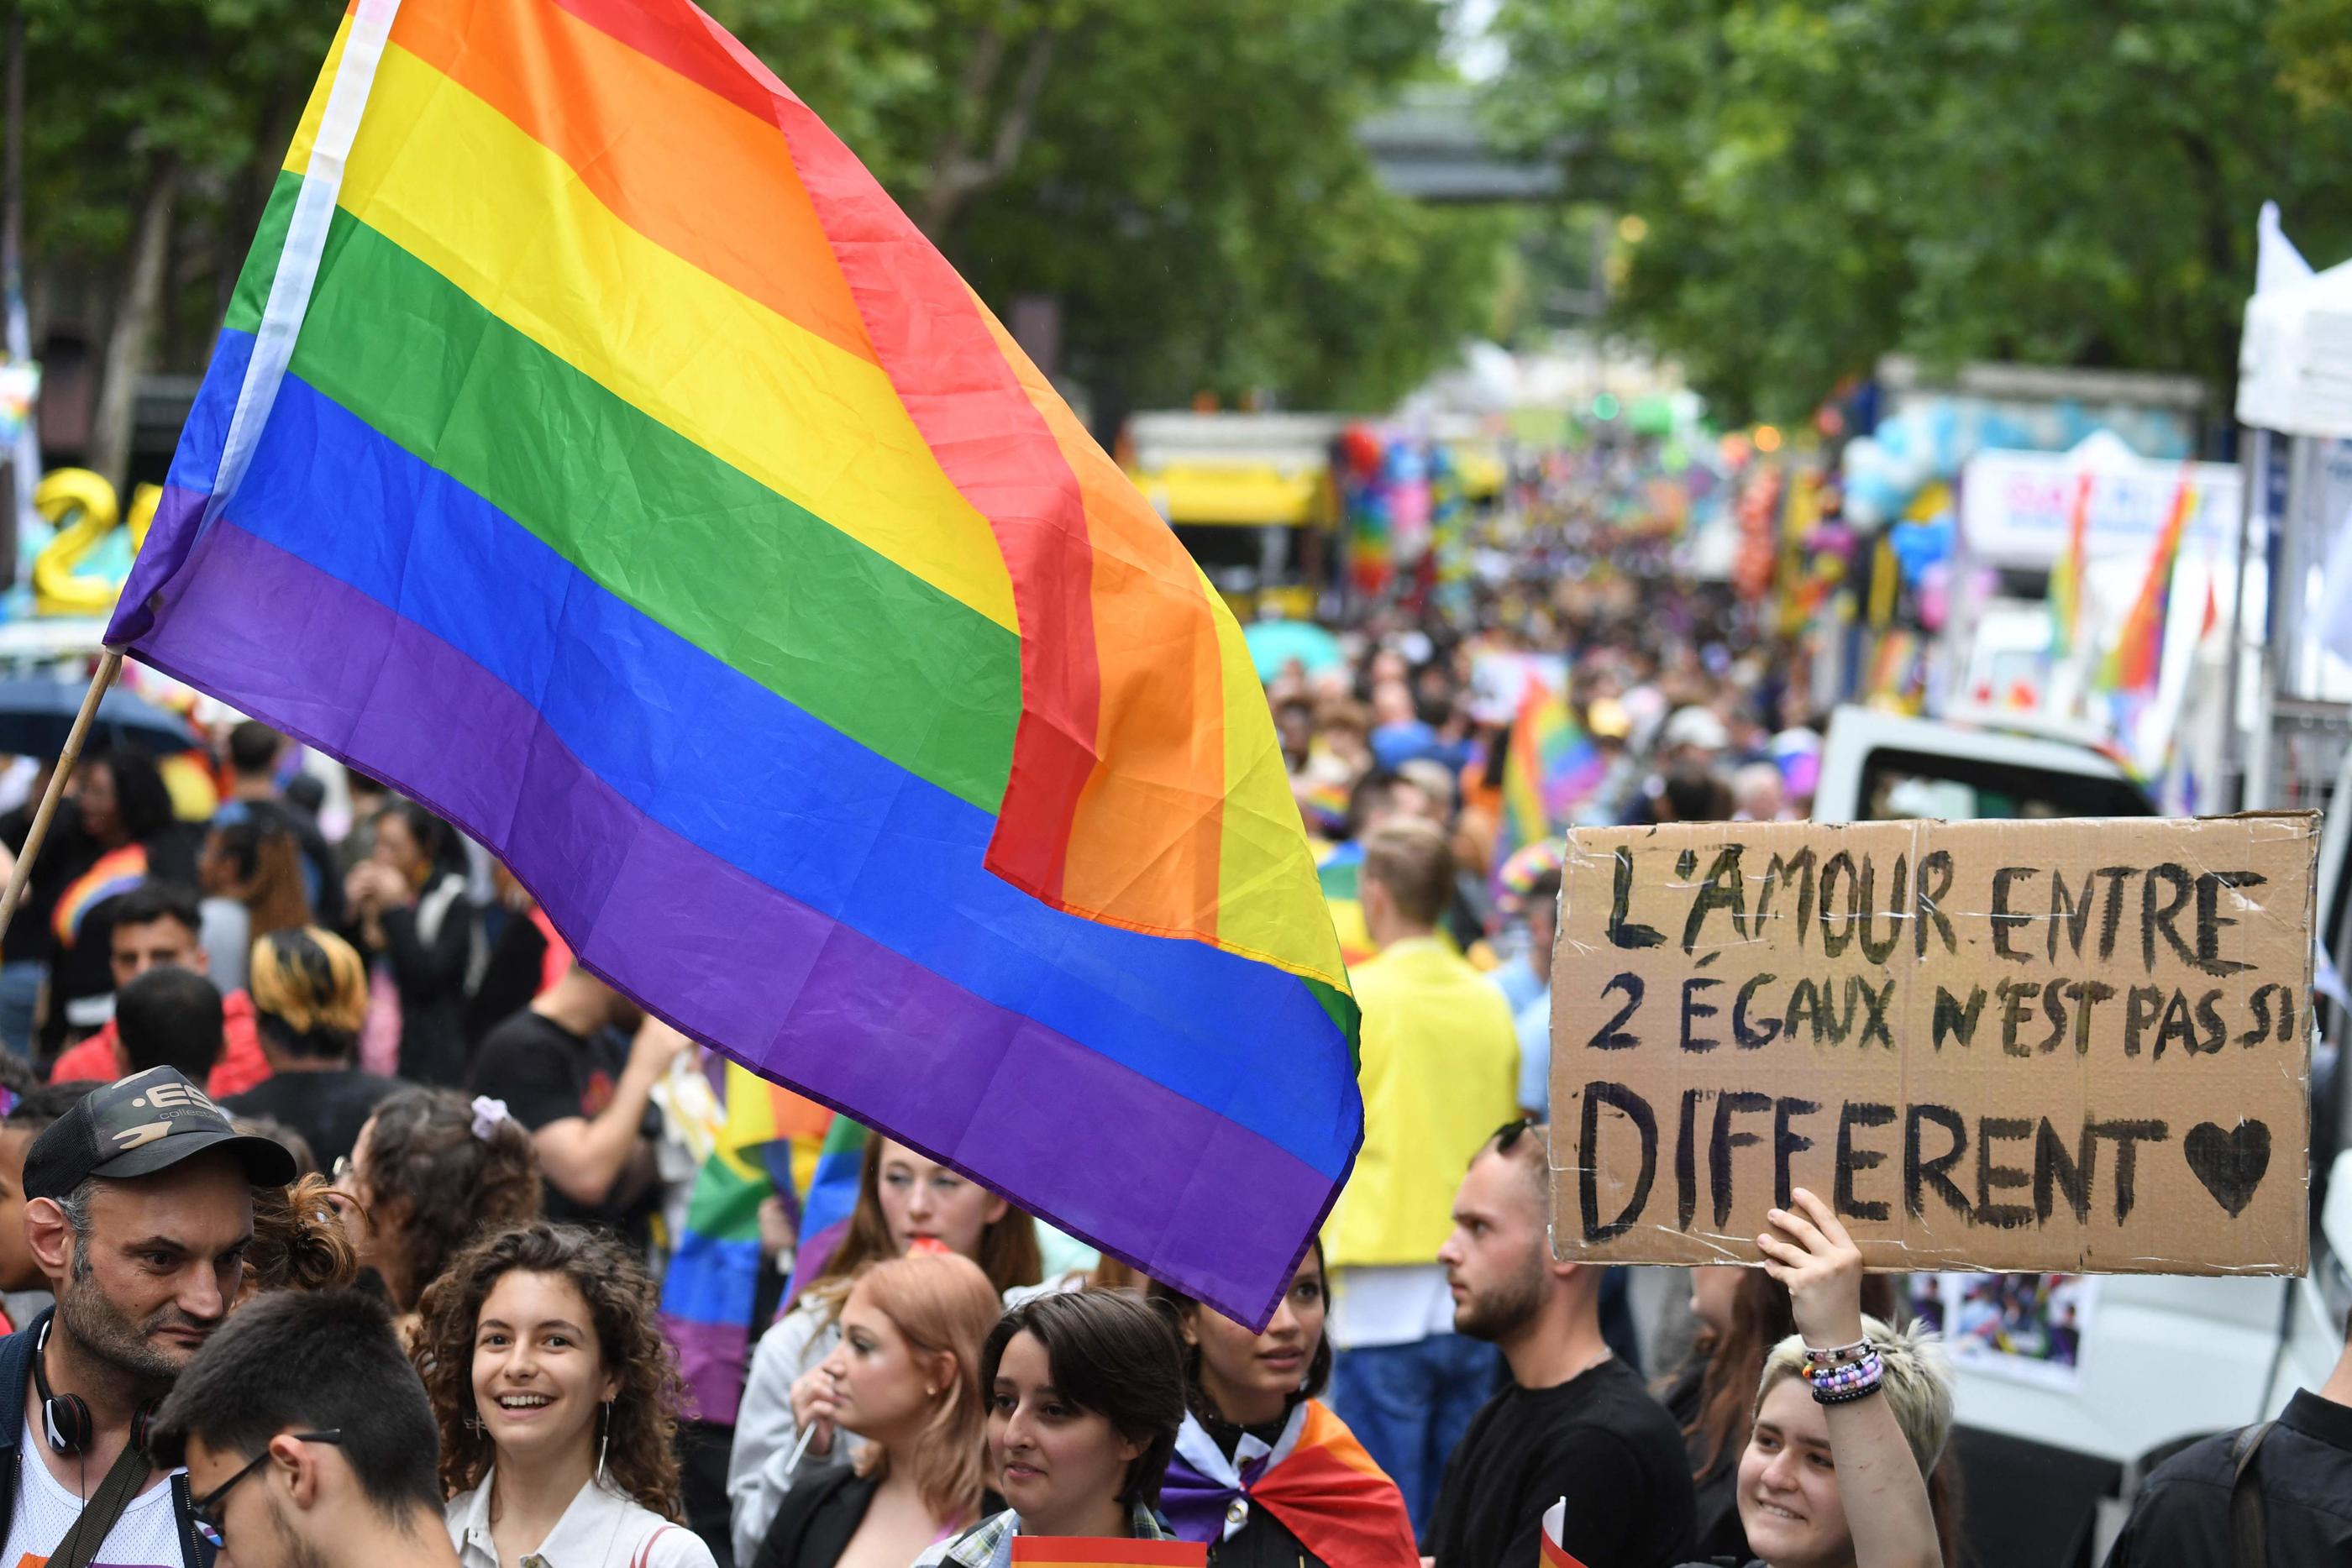 Au total, 4560 infractions contre les lesbiennes, gay, bi et trans ont été enregistrées l’an passé. AFP/Alain JOCARD